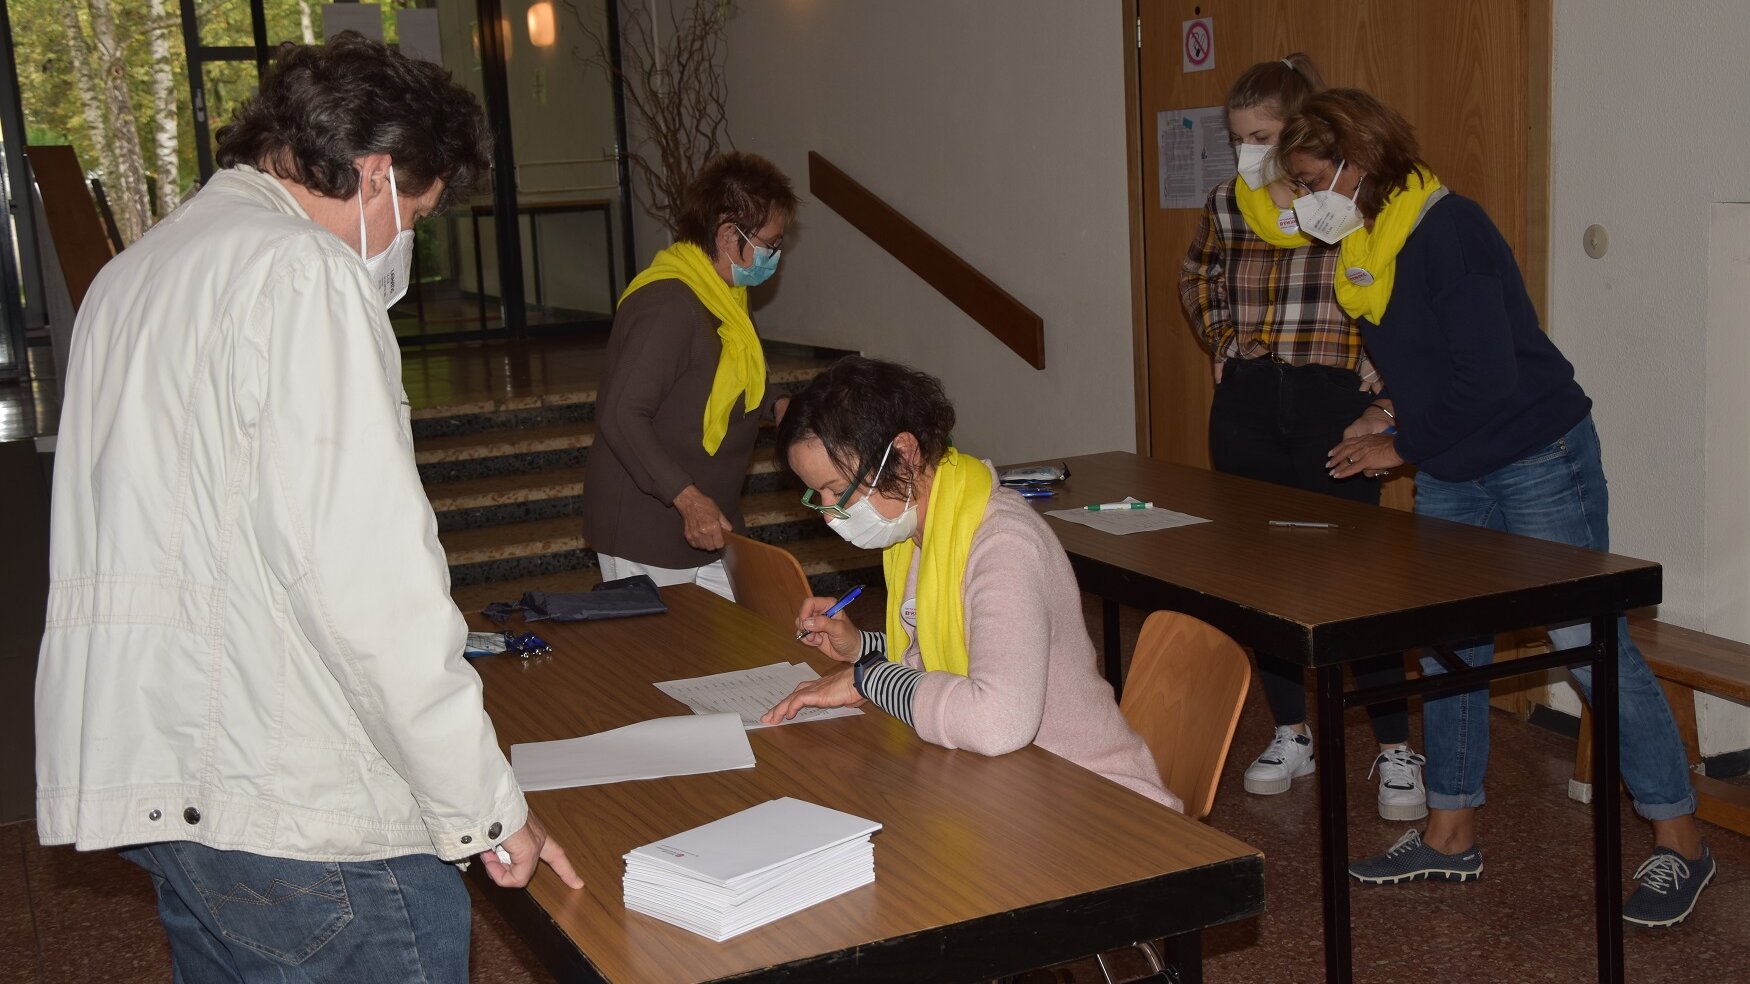 Mitglieder des Aktionsbündnisses Demenz Singen/Hegau überprüfen den Impfausweis eines Besuchers